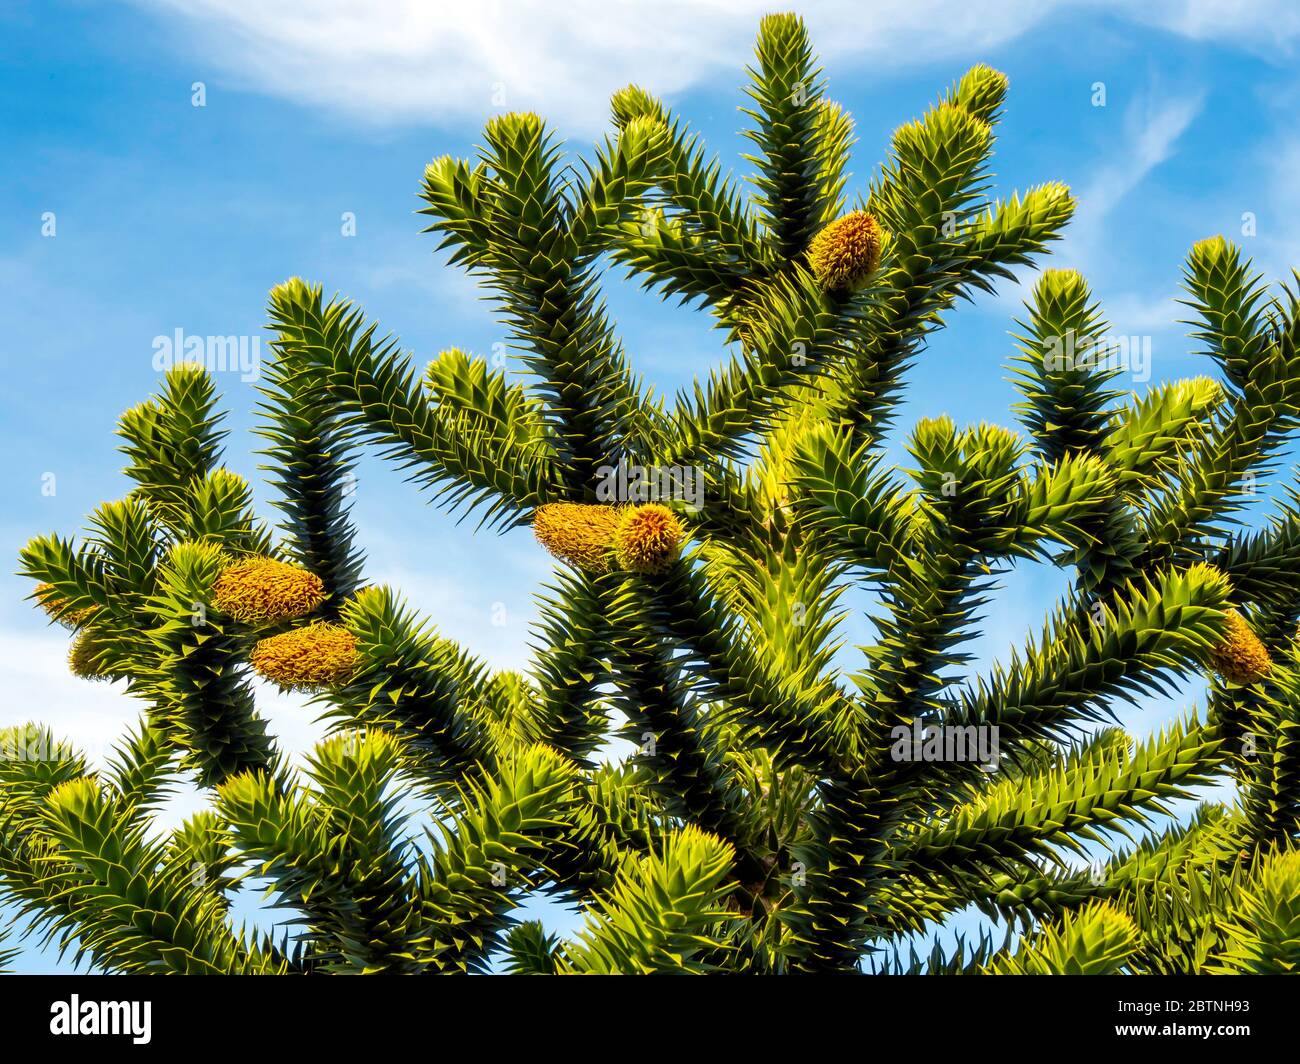 Affe Puzzle Baum Araucaria araucana ist ein Gartenbaum, der zweihäusig ist, mit Bäumen, die entweder männlich oder weiblich sind. Braune Zapfen zeigen, dass es männlich ist Stockfoto